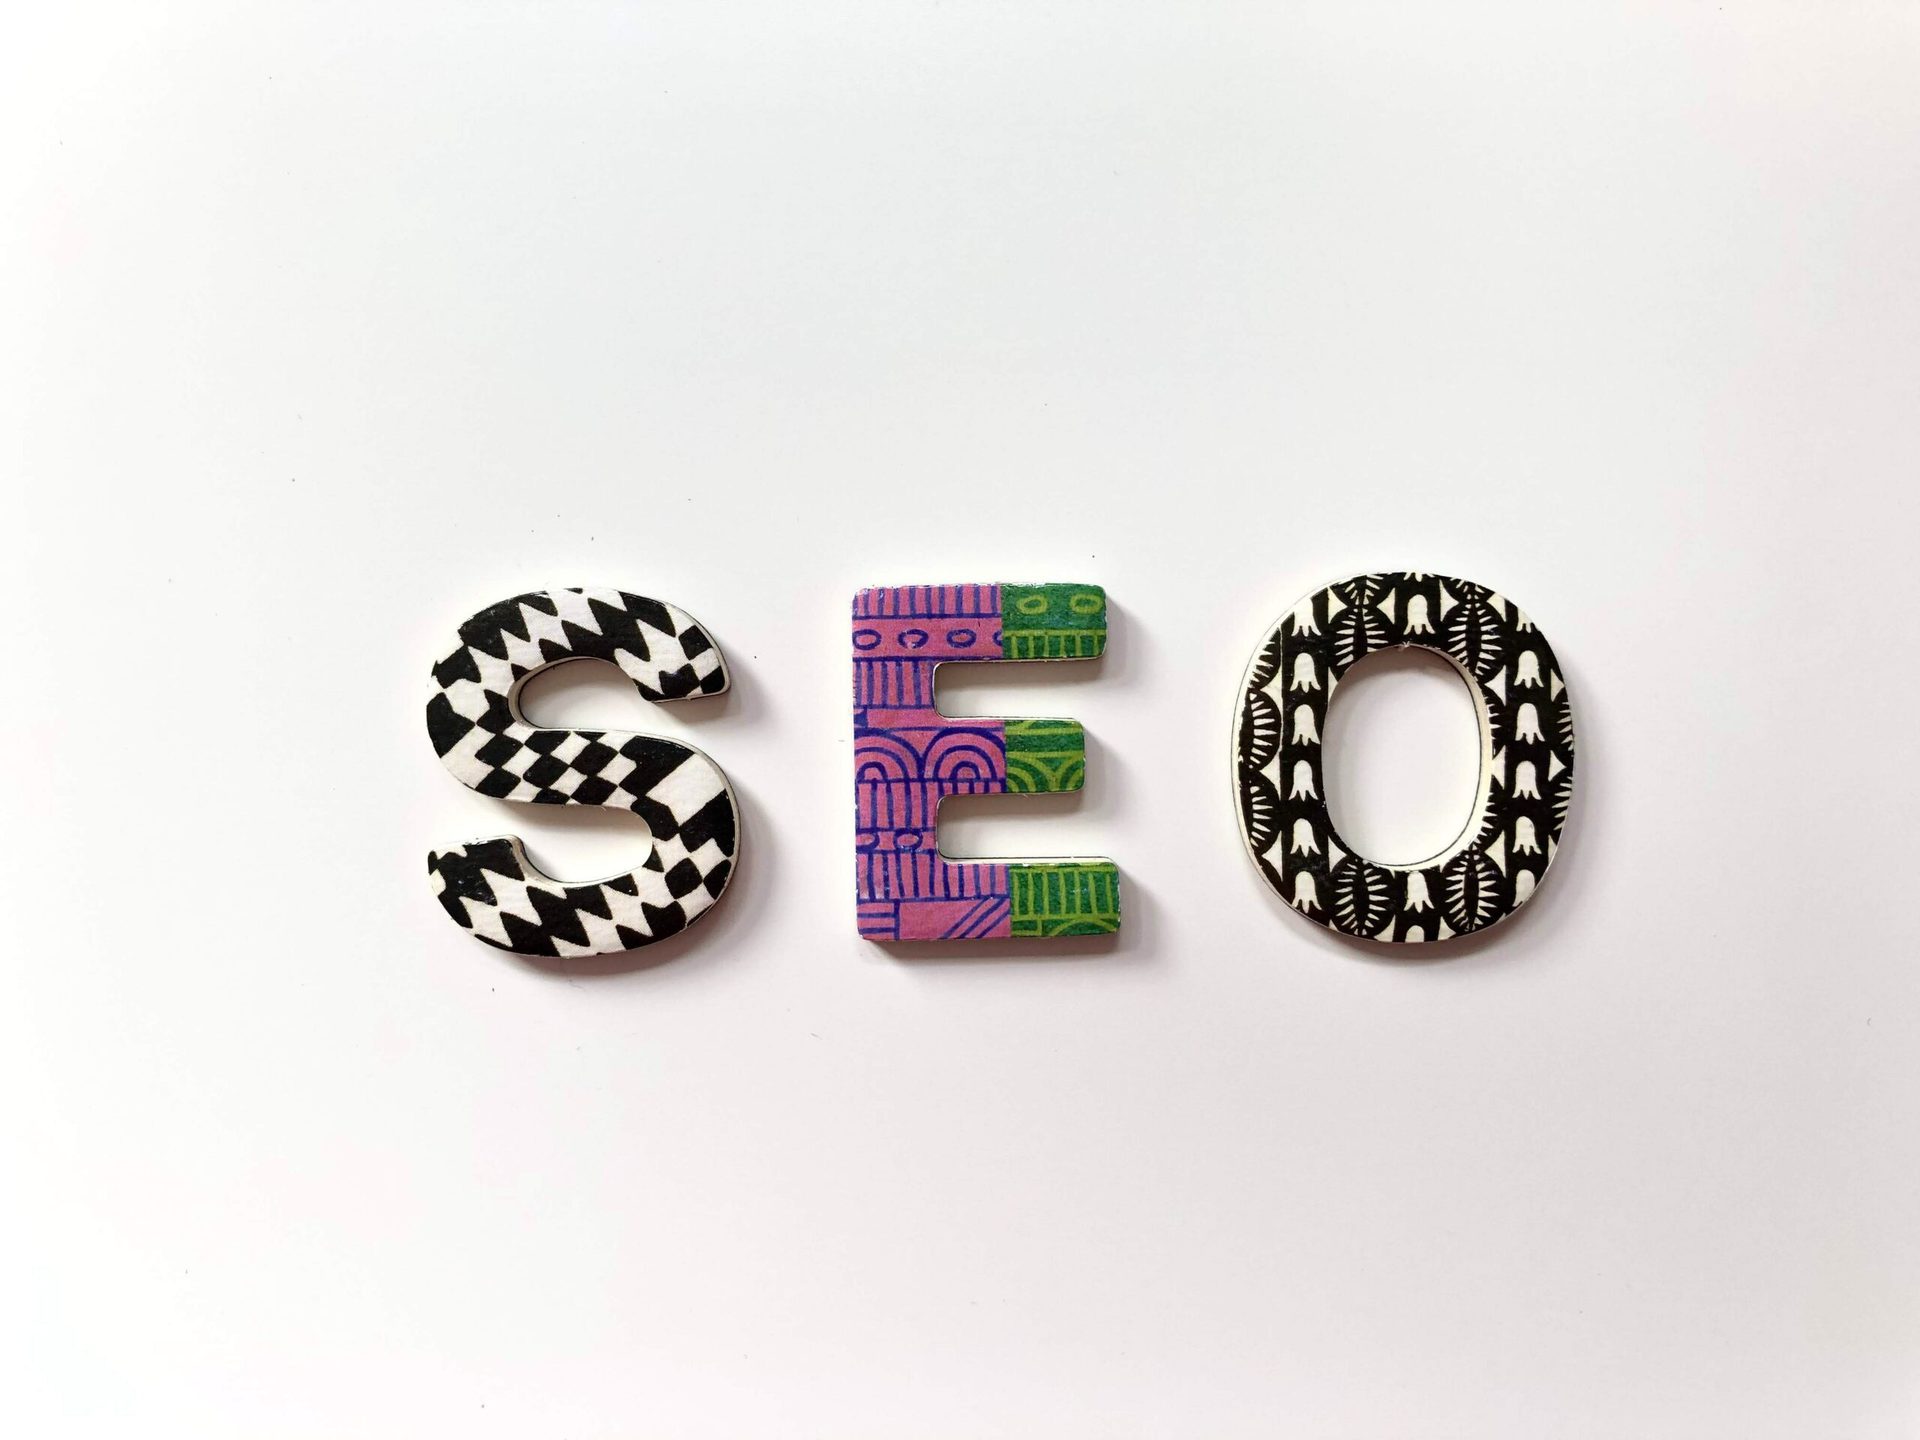 Mit diesen 5 SEO-Optimierungsschritten kannst du bei Google auf Platz 1 landen!